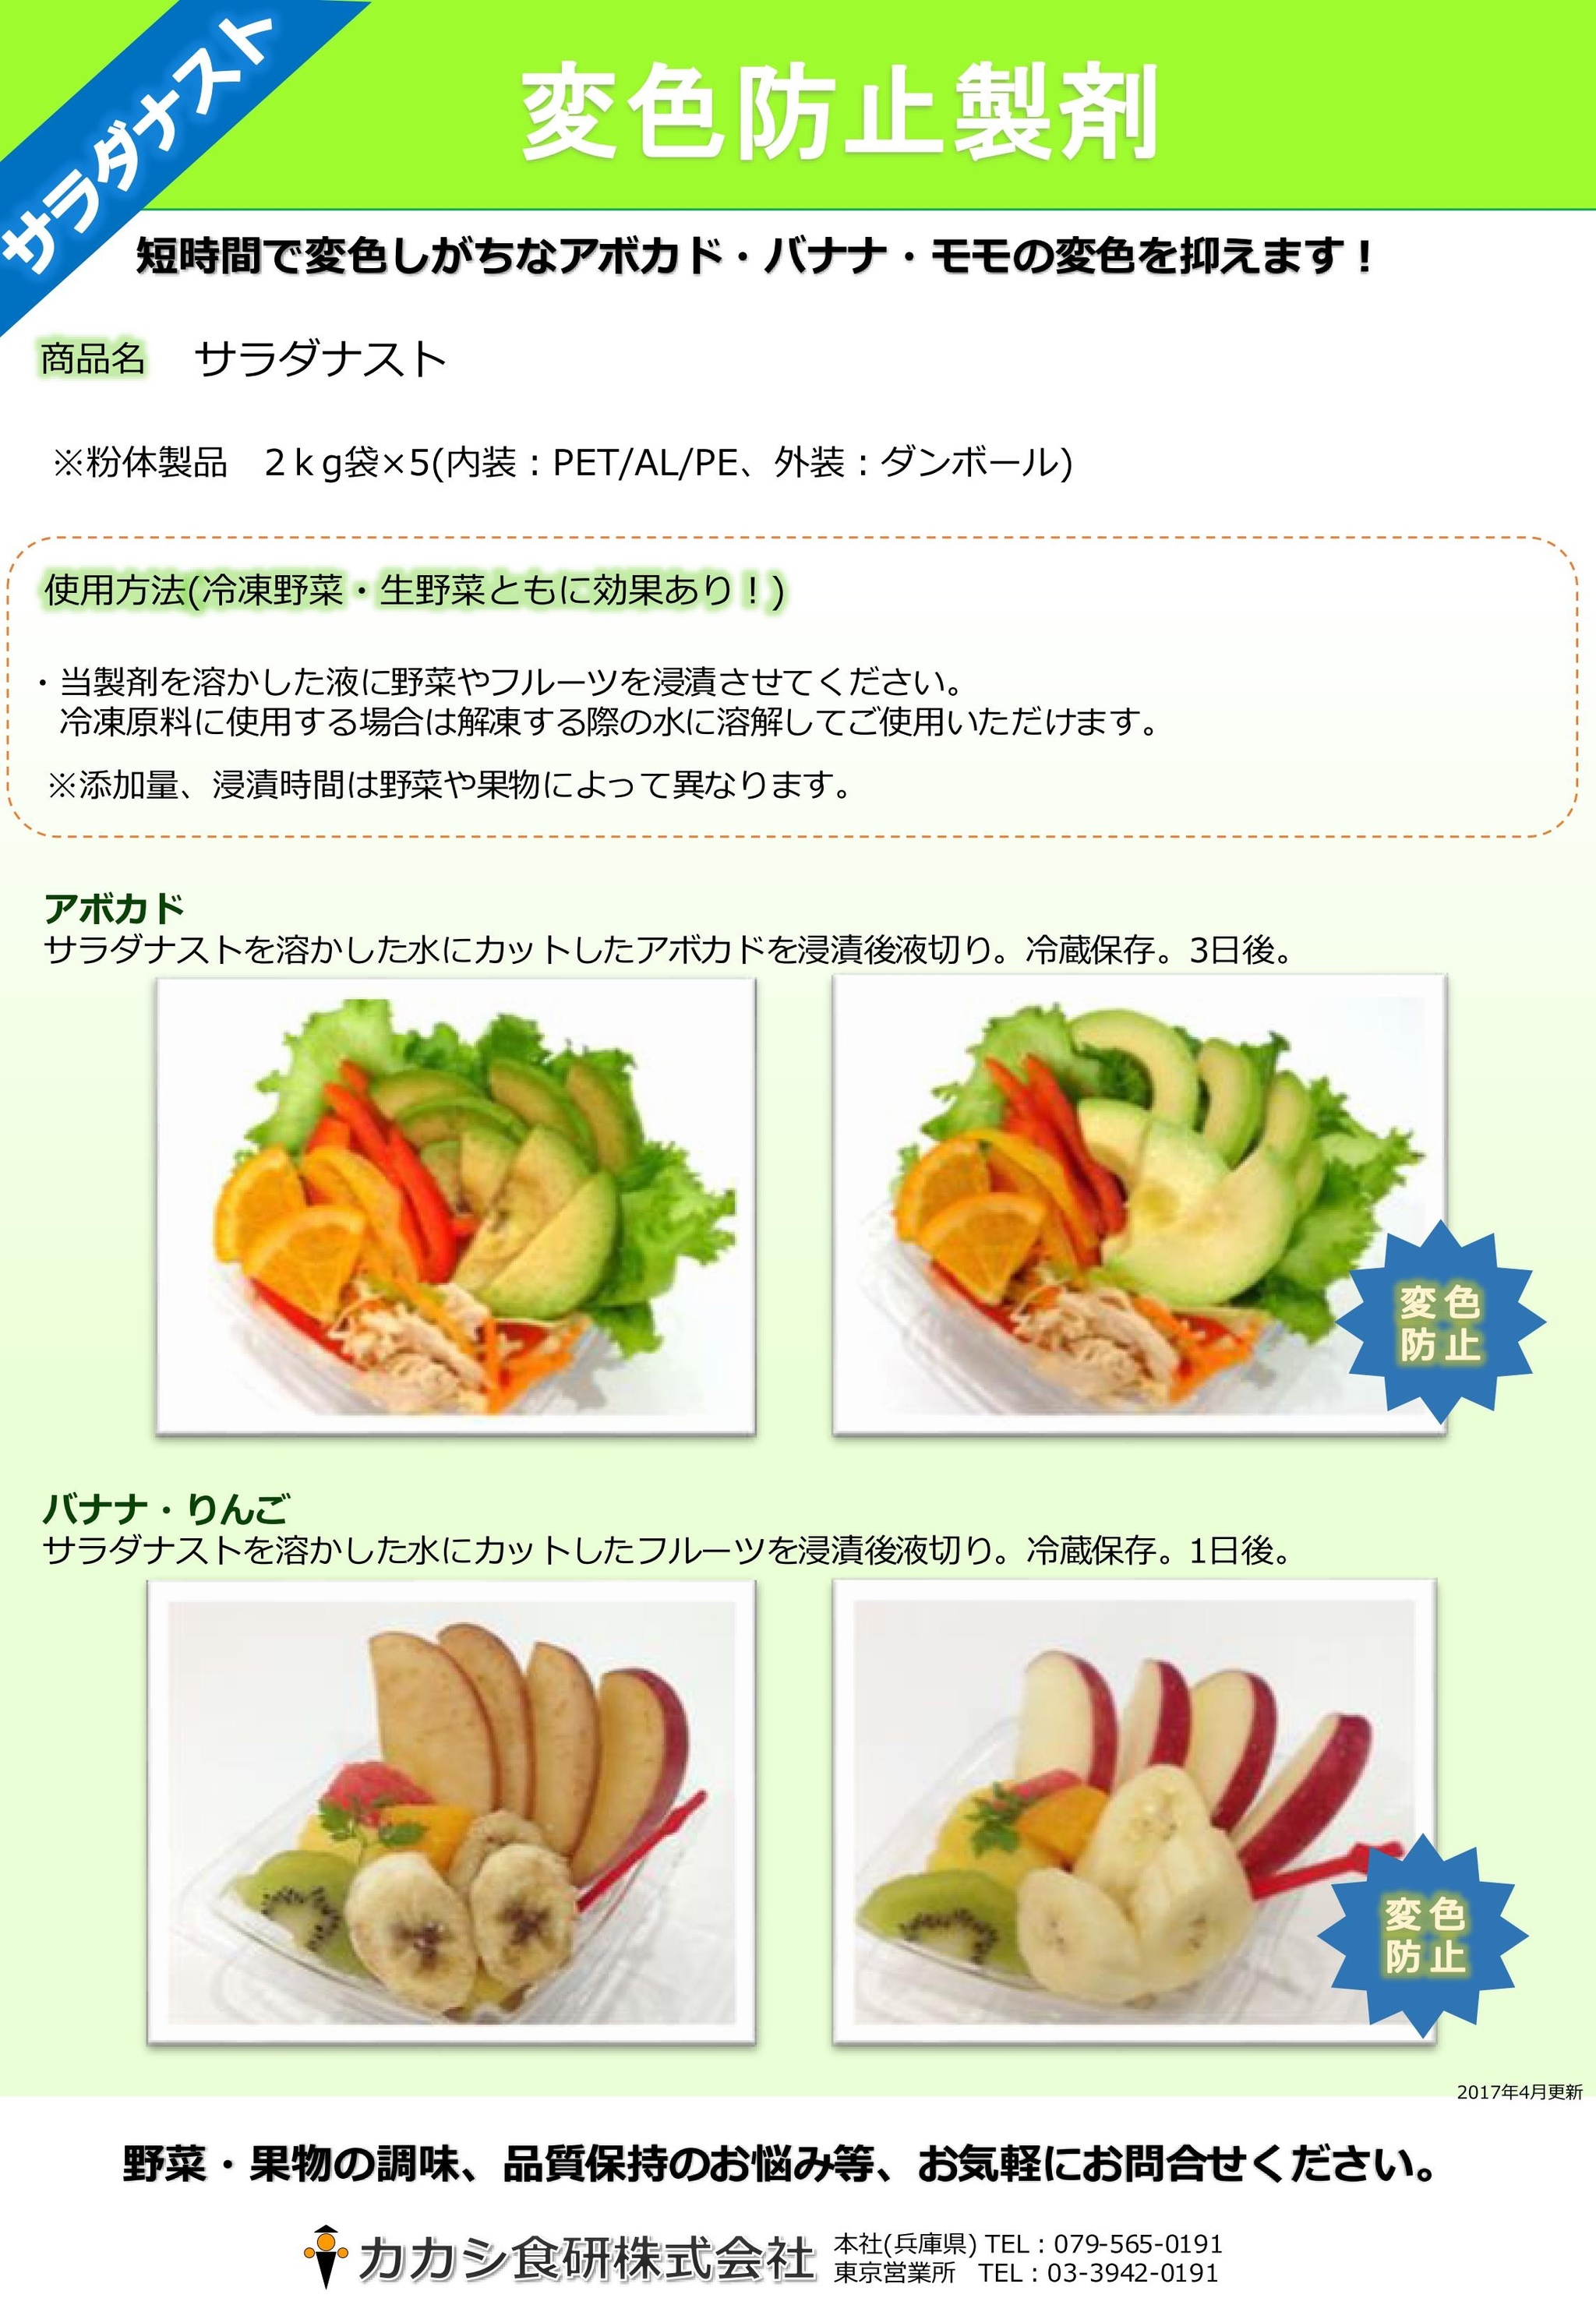 品質保持剤 カカシ食研株式会社 公式ホームページ